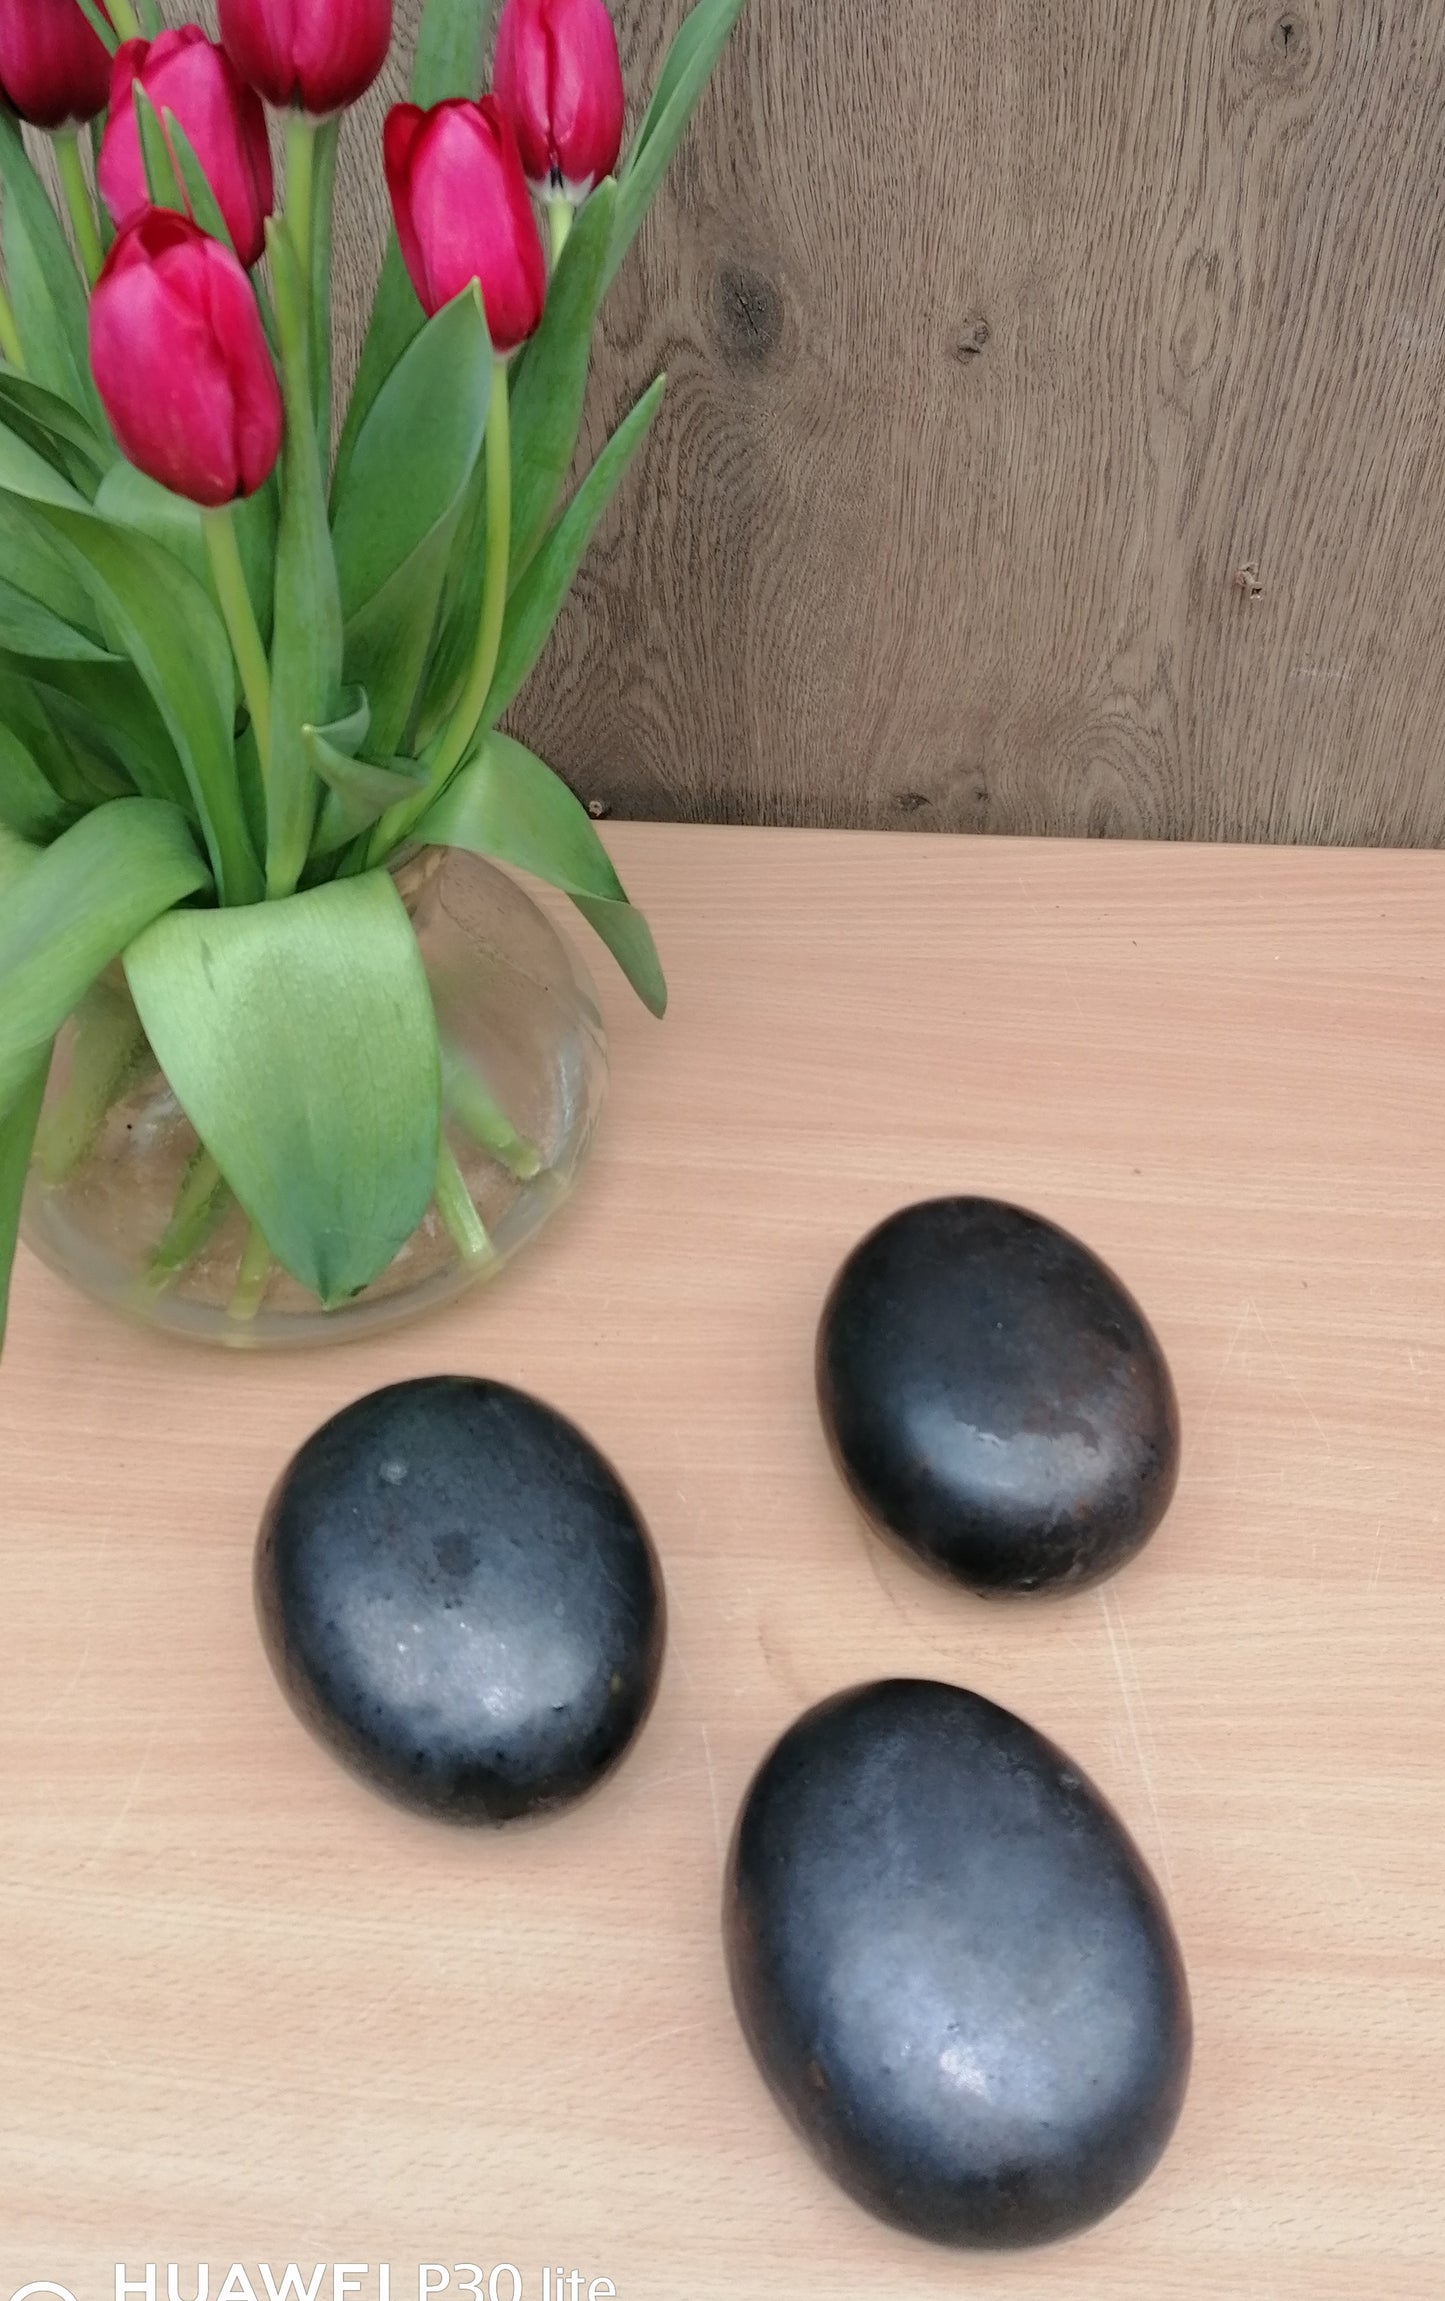 NEU !! 3er Set kleine ovale Eier - Steine aus frostfesten doppeltglasierten grauen/ anthrazitfarbenen Steinzeug  Dekoration